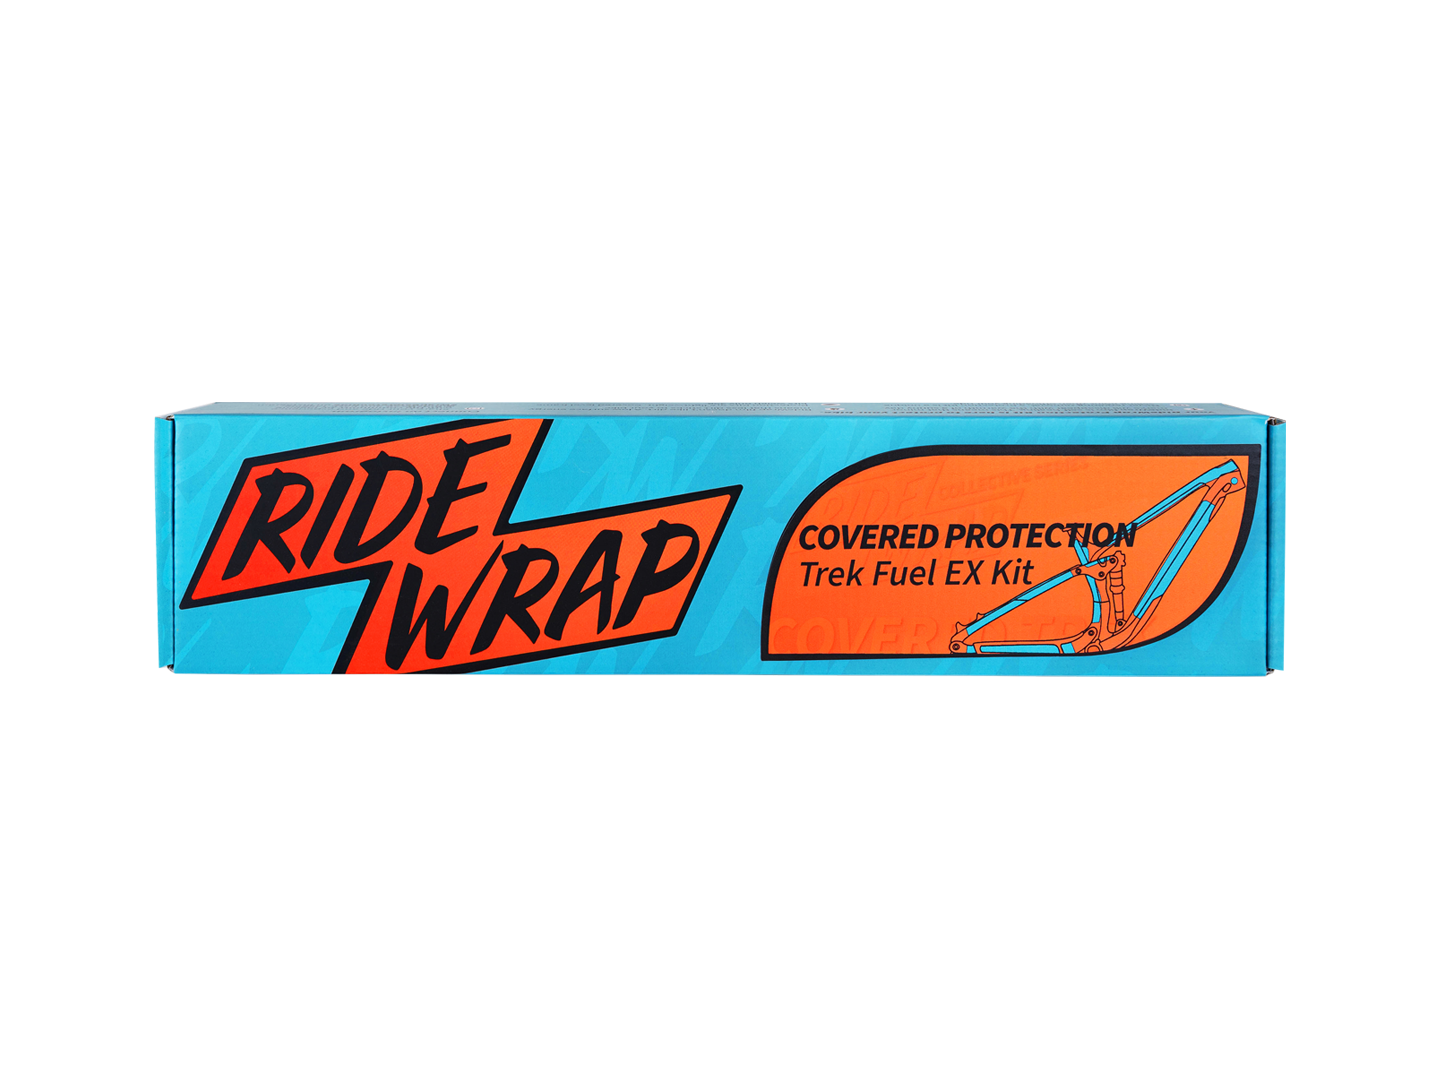 Kit vernis de protection clair brillant RideWrap Trek Fuel EX Covered